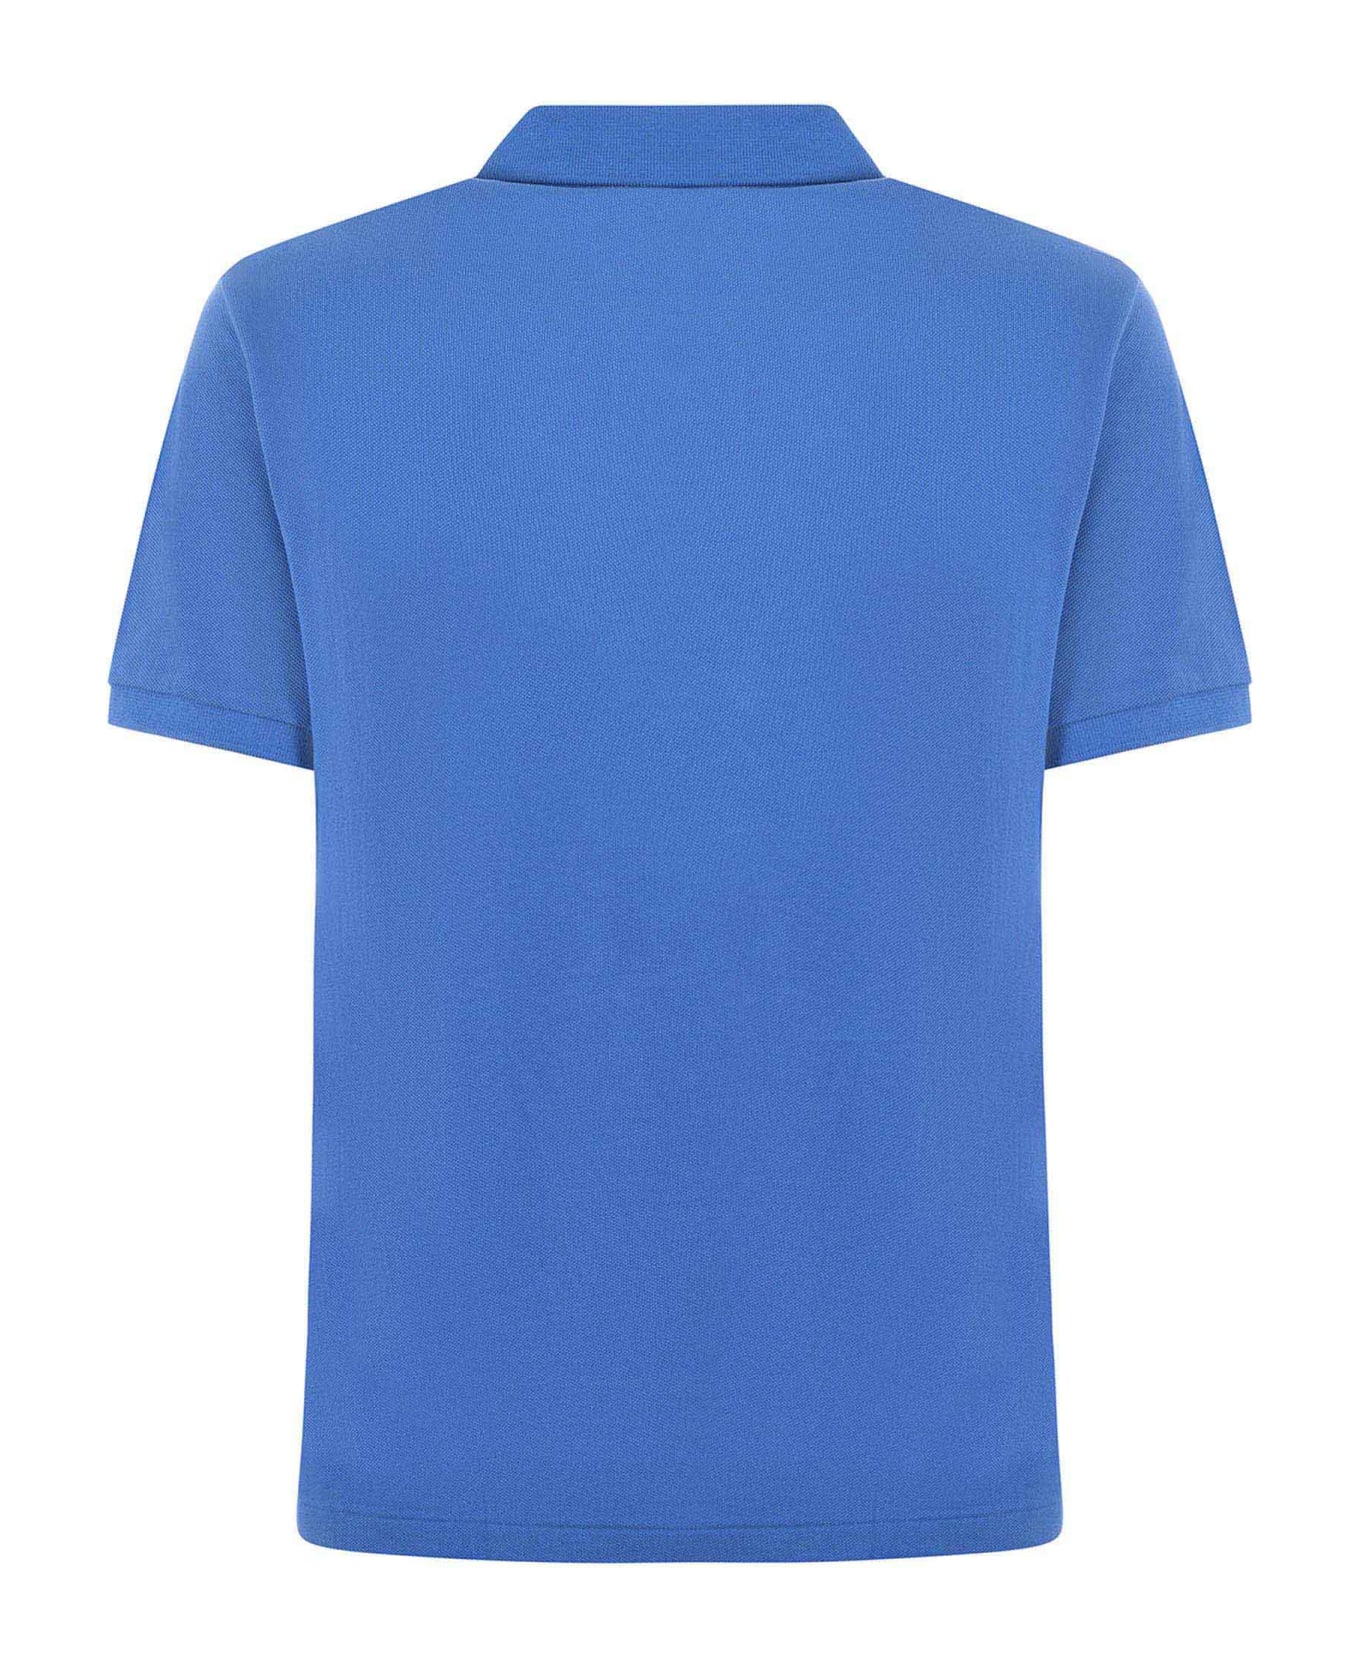 Polo Ralph Lauren "polo Ralph Lauren" Polo Shirt - Azzurro ポロシャツ